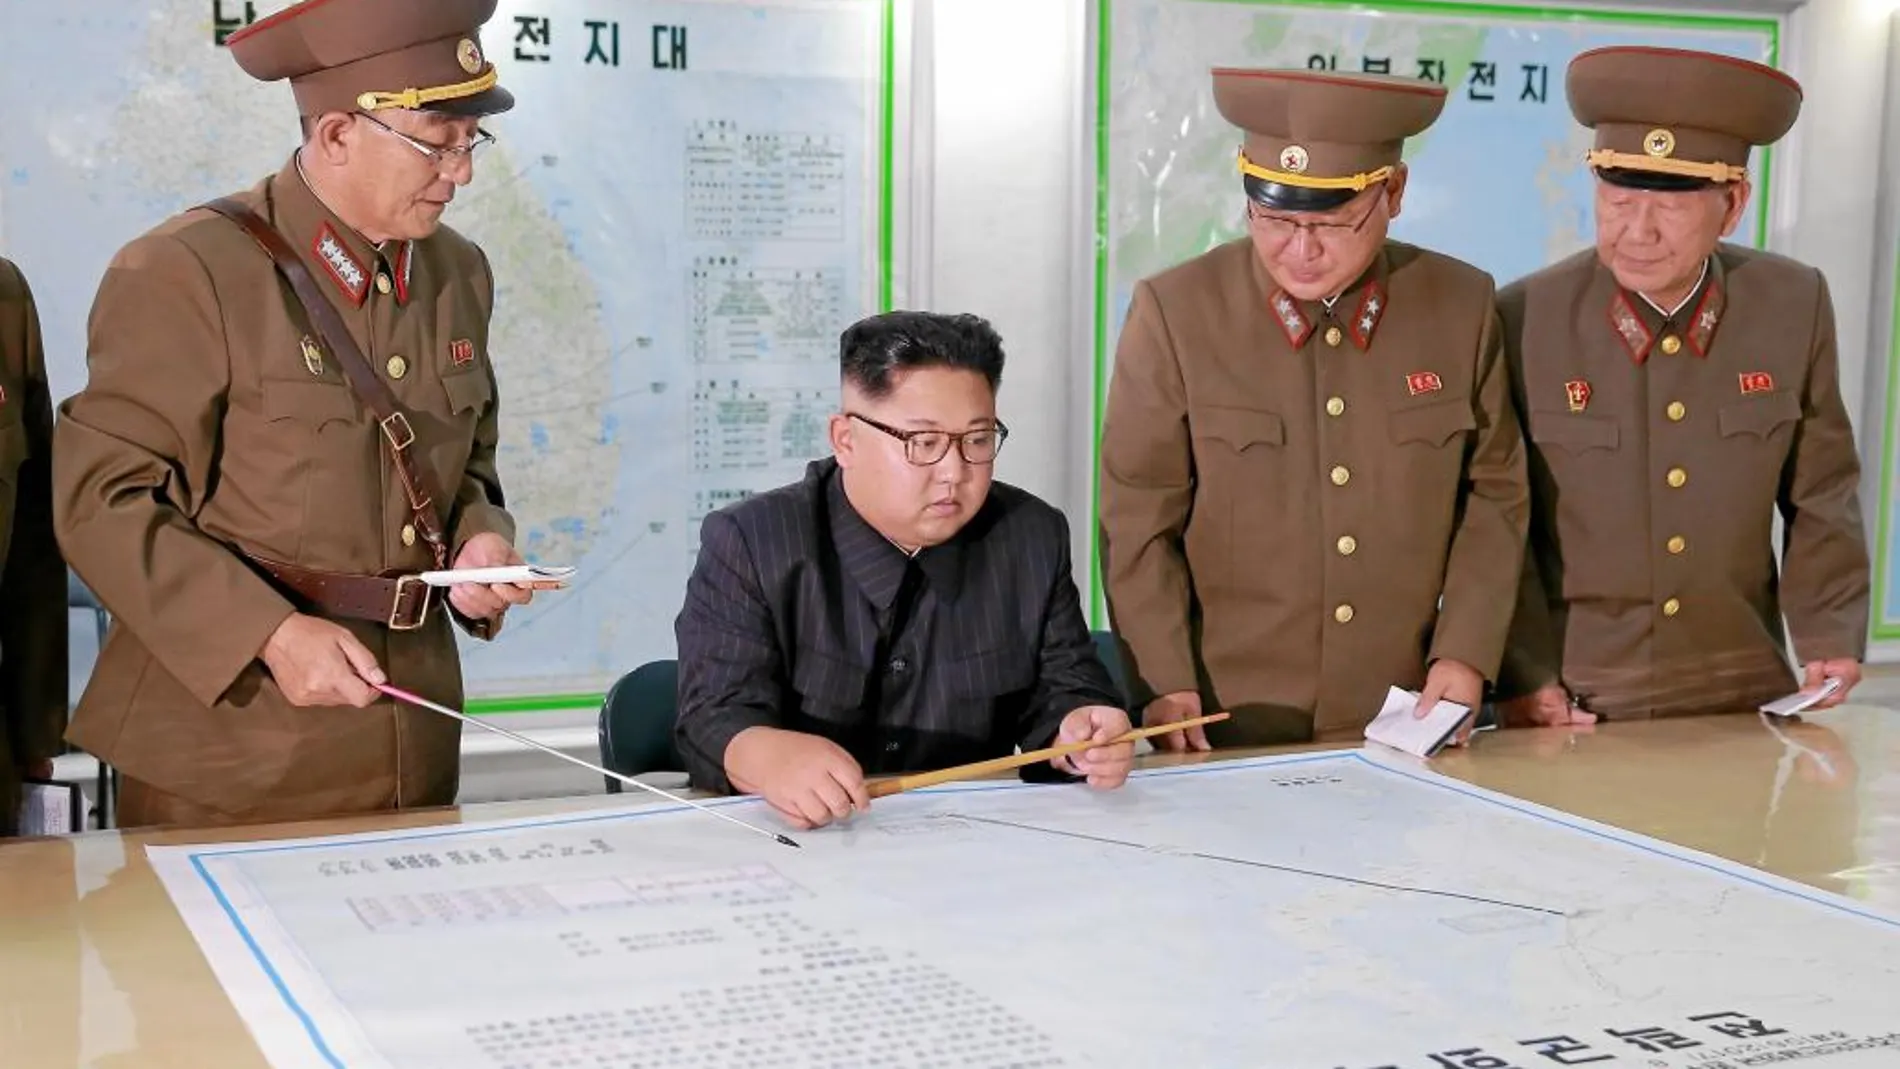 El líder norcoreano Kim Jong Un inspecciona los planes de lanzamiento de misiles hacia la isla de Guam, ayer